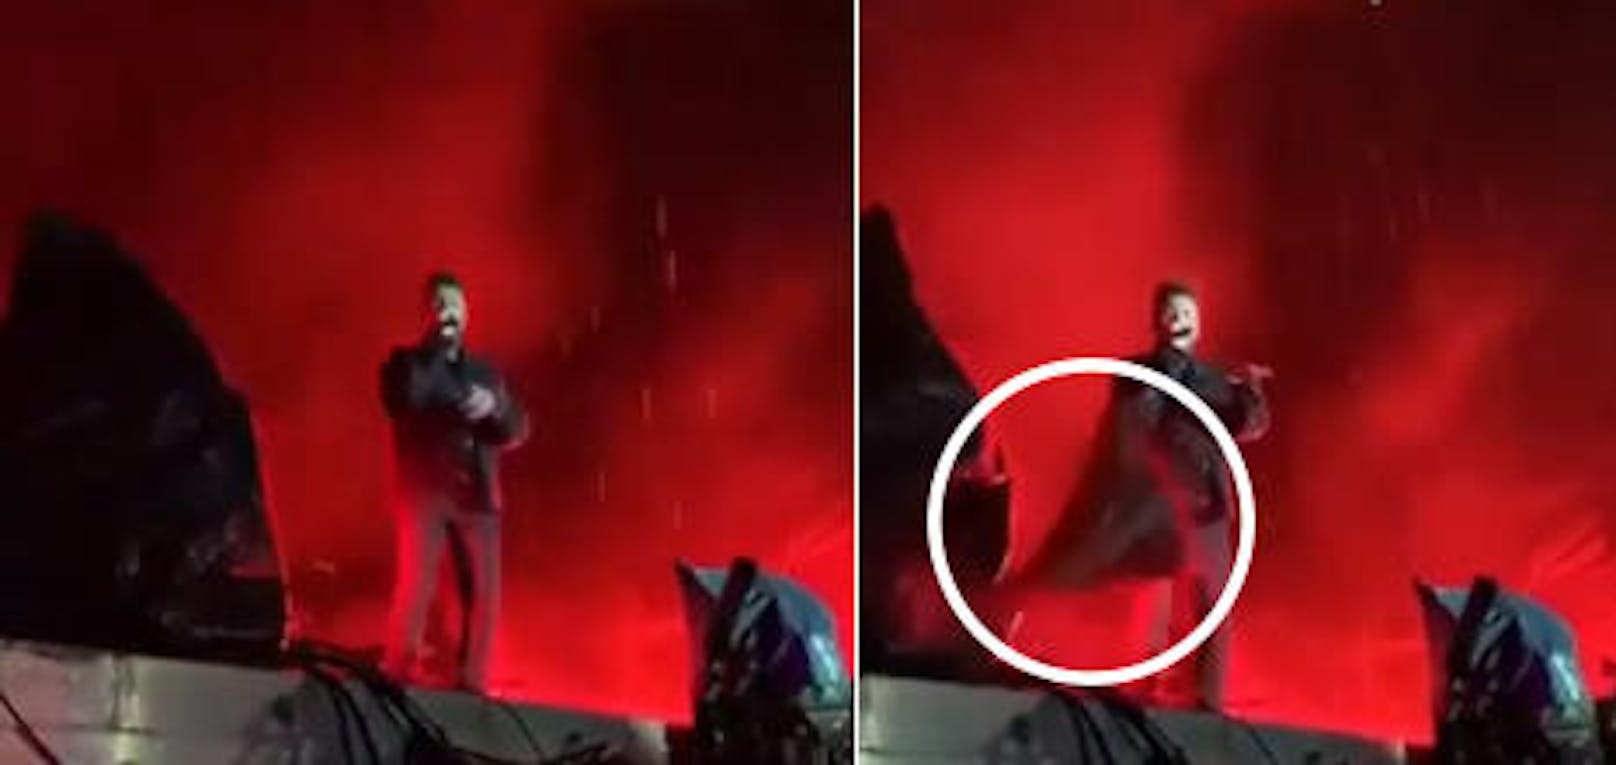 23.10.2018: The Weeknd postet ein Video seines Konzerts in Mexiko City - Ein Stück Bühnenequipment krachte zu Boden und hätte ihn beinahe unter sich begraben.